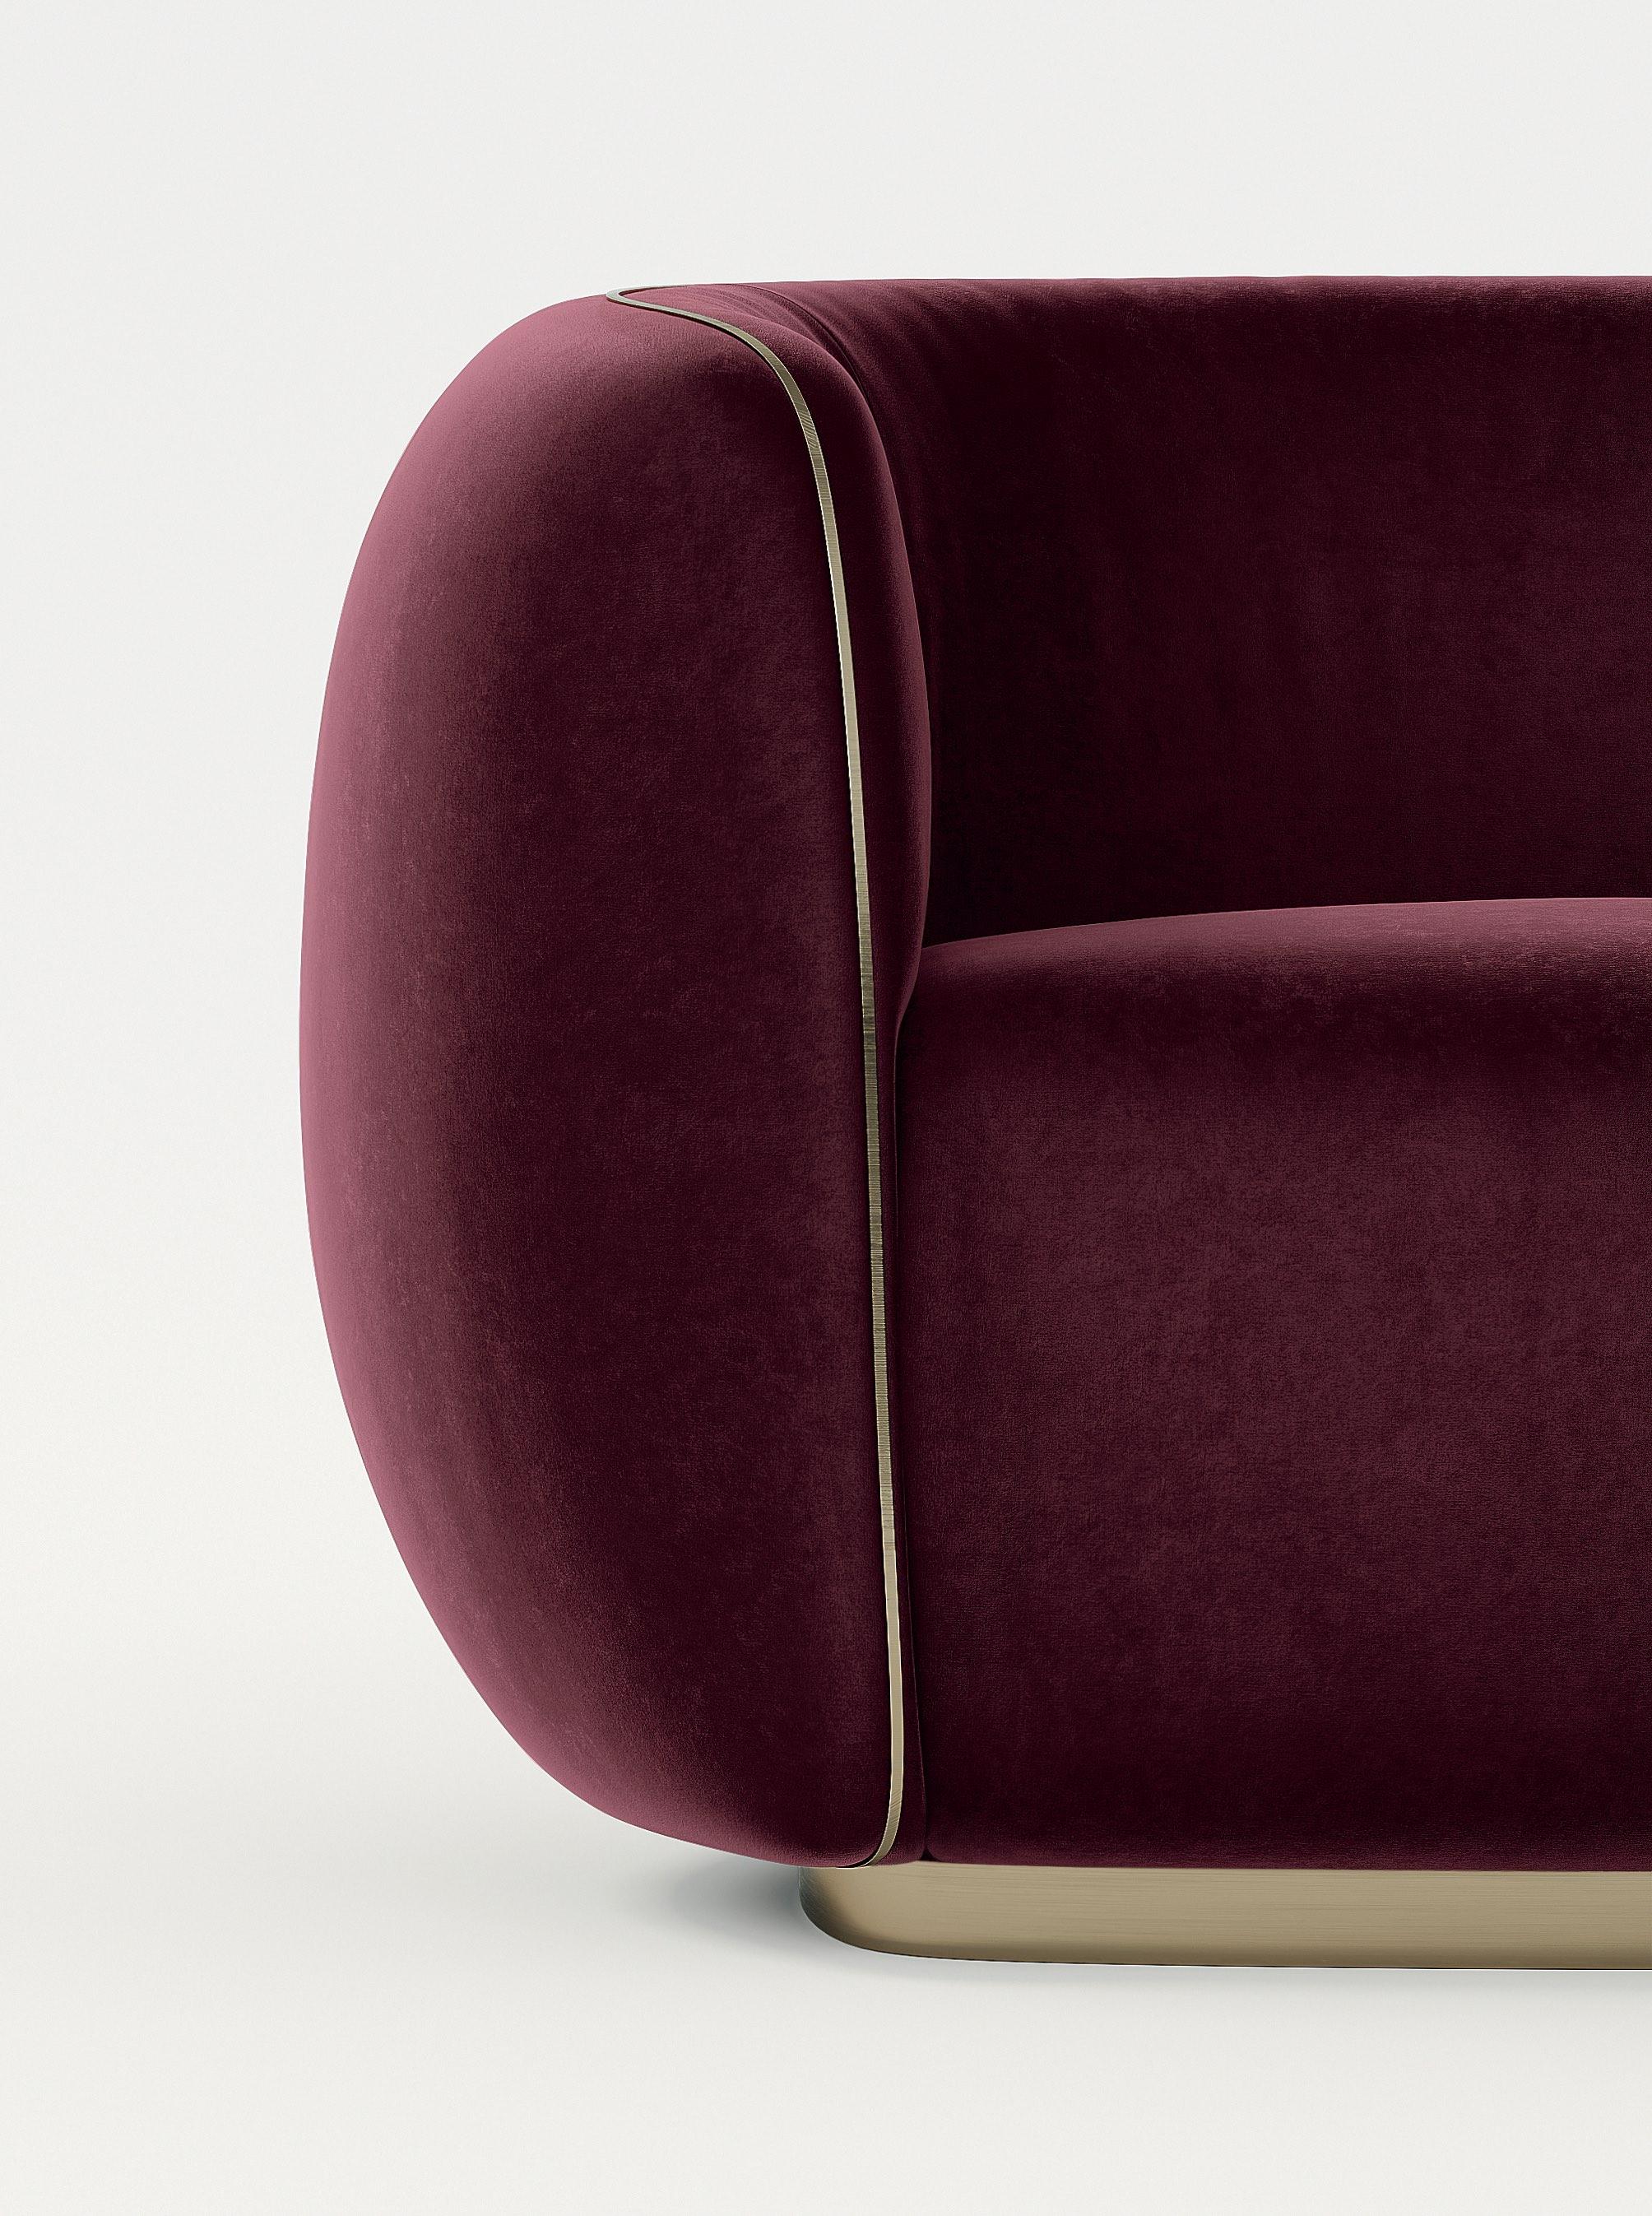 21. Jahrhundert Art Deco Elie Saab Maison Samt Bronze Messing Elite Sessel, Italien

Elite ist ein zeitloser, kraftvoller Klassiker, der sich durch exklusive Details und die exquisite Verarbeitung seiner futuristischen Linien auszeichnet. Der Sessel